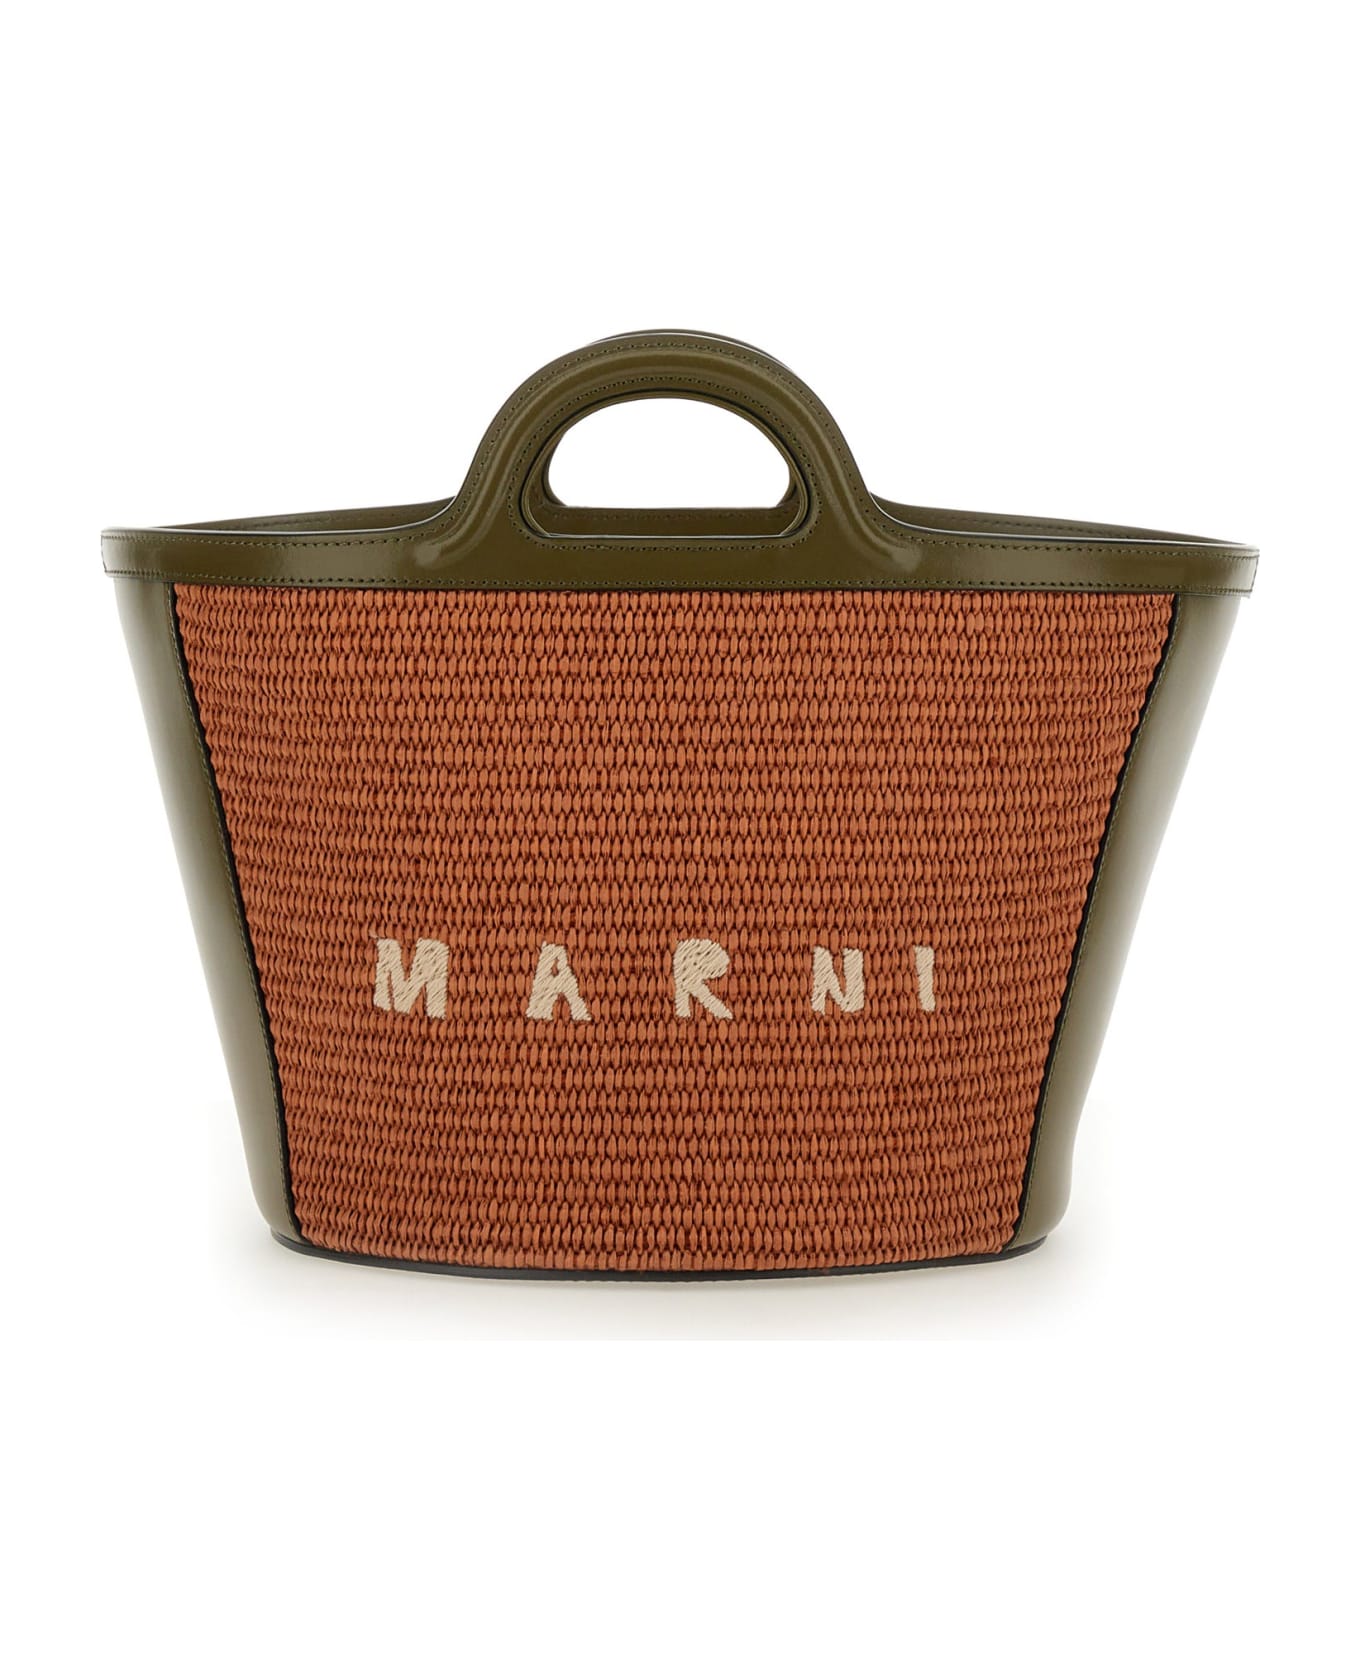 Marni Tropicalia Small Bag - Brown トートバッグ